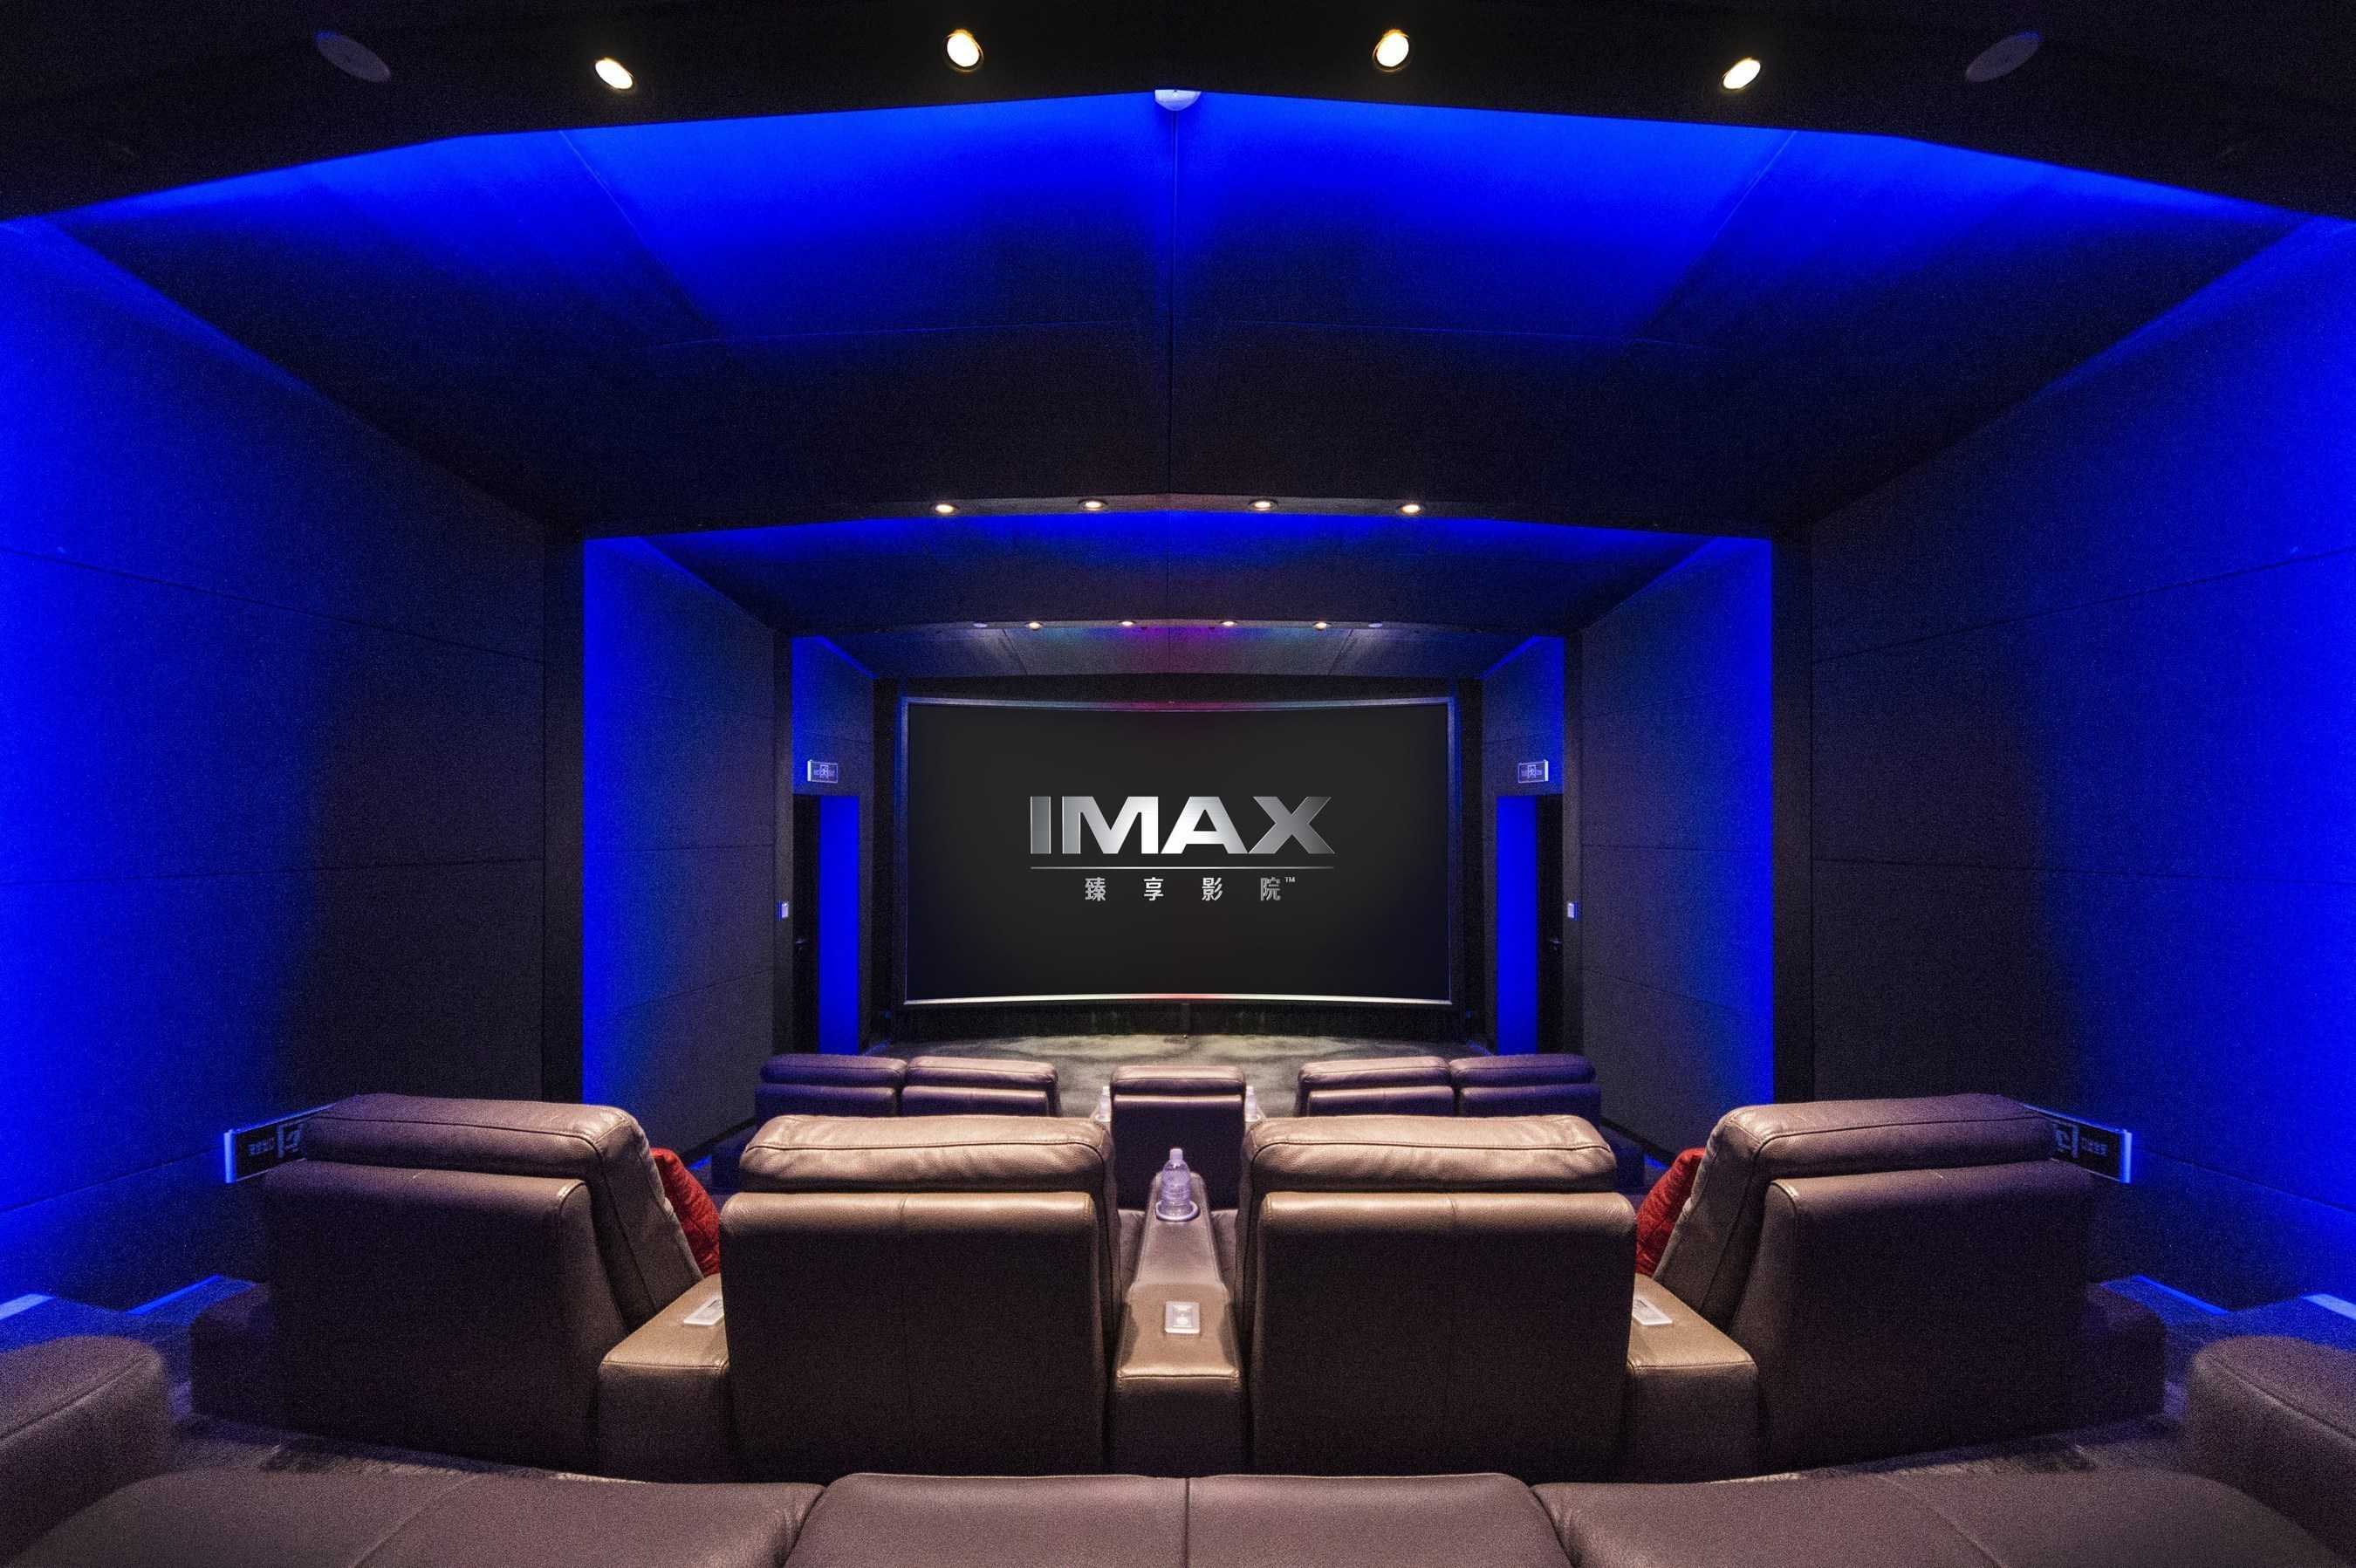 Imax enhanced: все, что вам нужно знать о формате домашнего кинотеатра